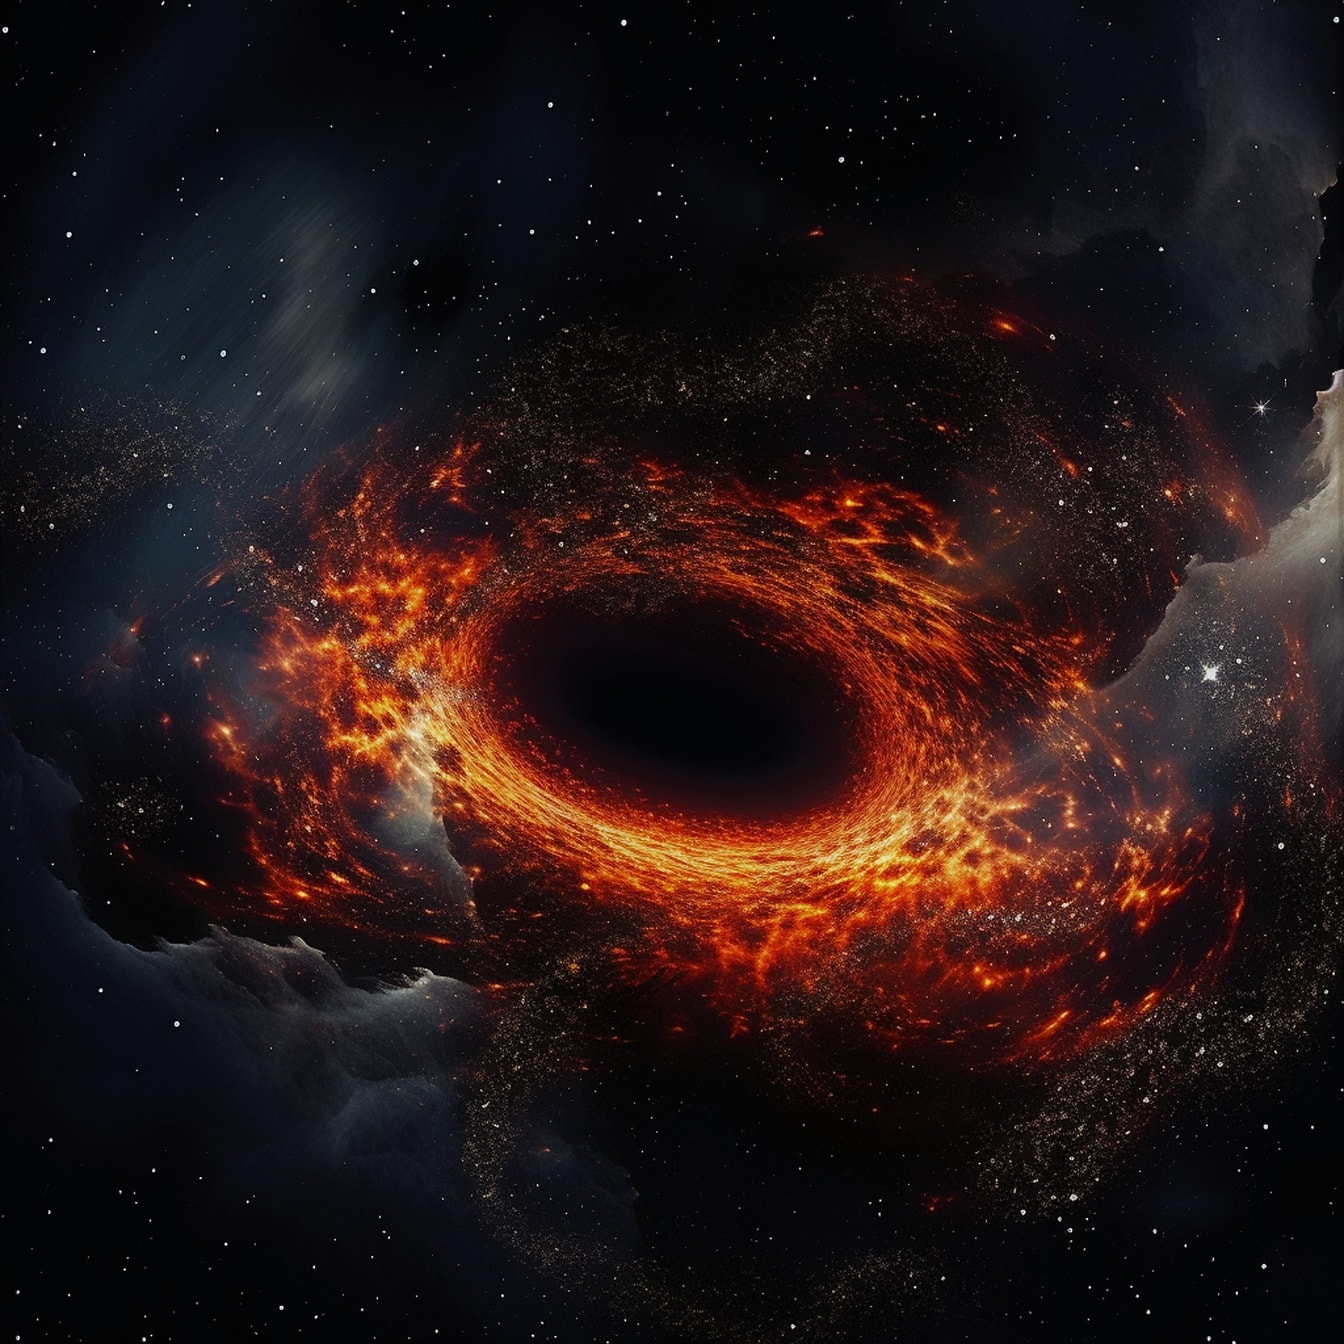 Tamnocrvena eksplozija velikog praska u dubokom svemiru